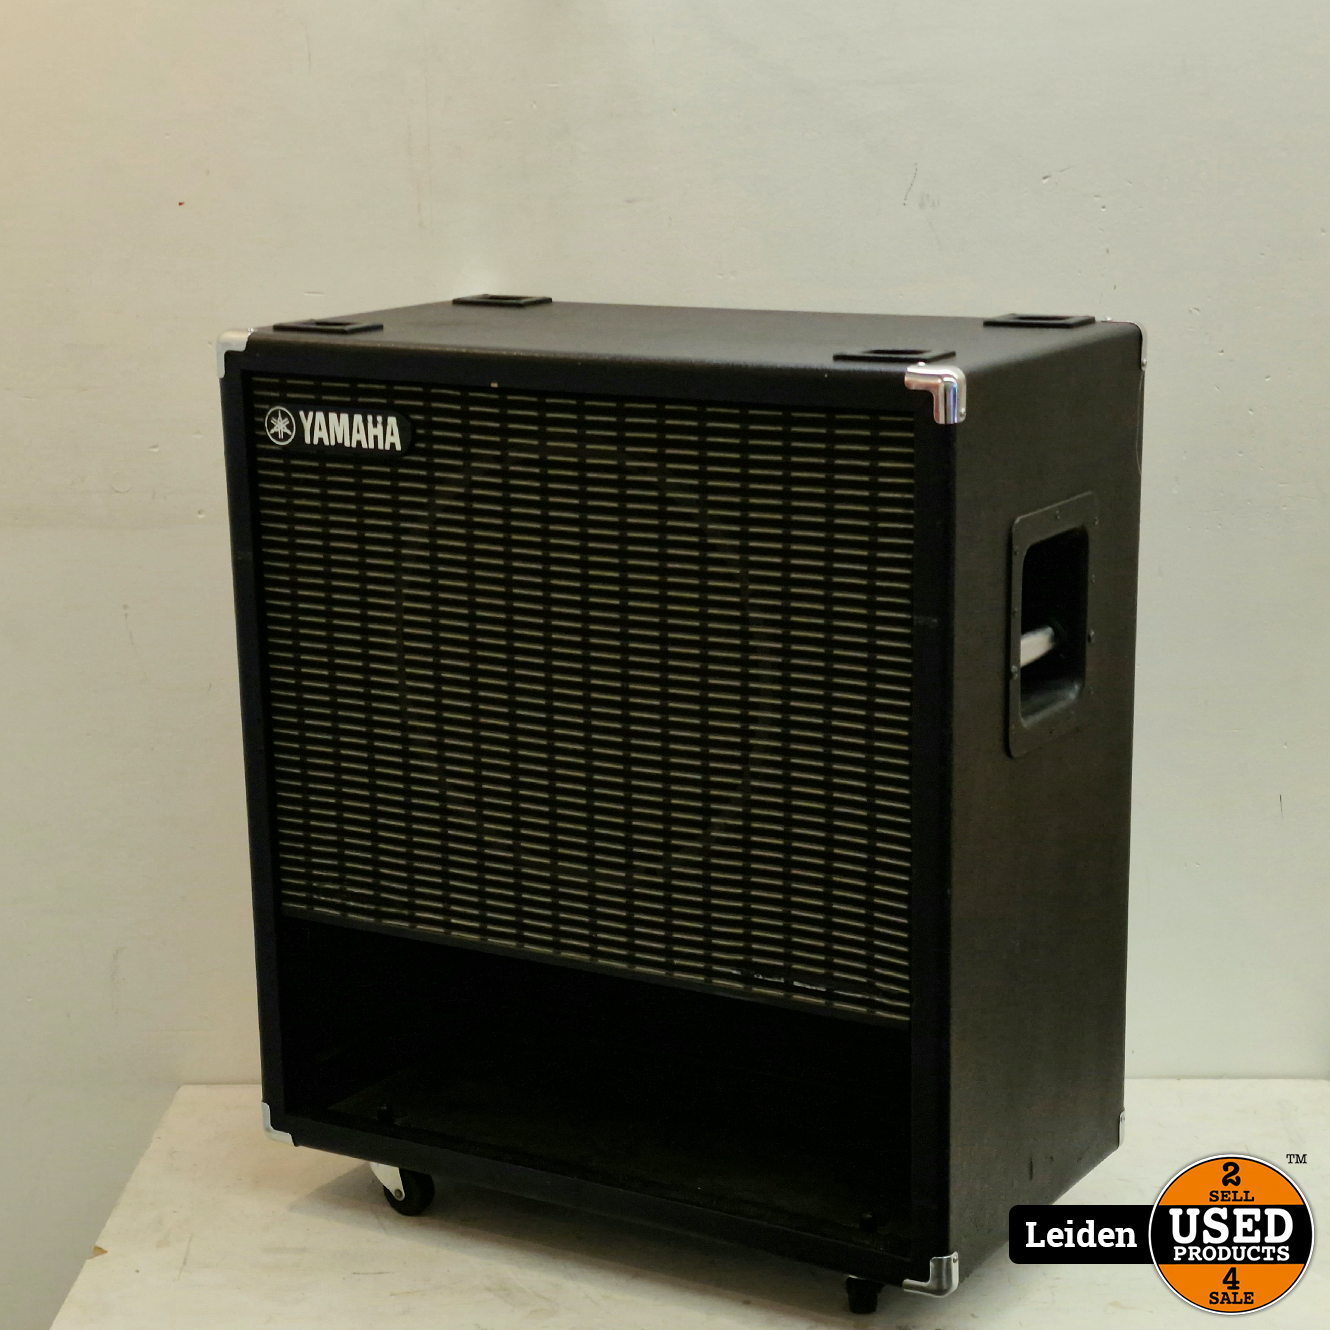 J-110L 1x15 120 Watt Cabinet Speaker - Used Products Leiden